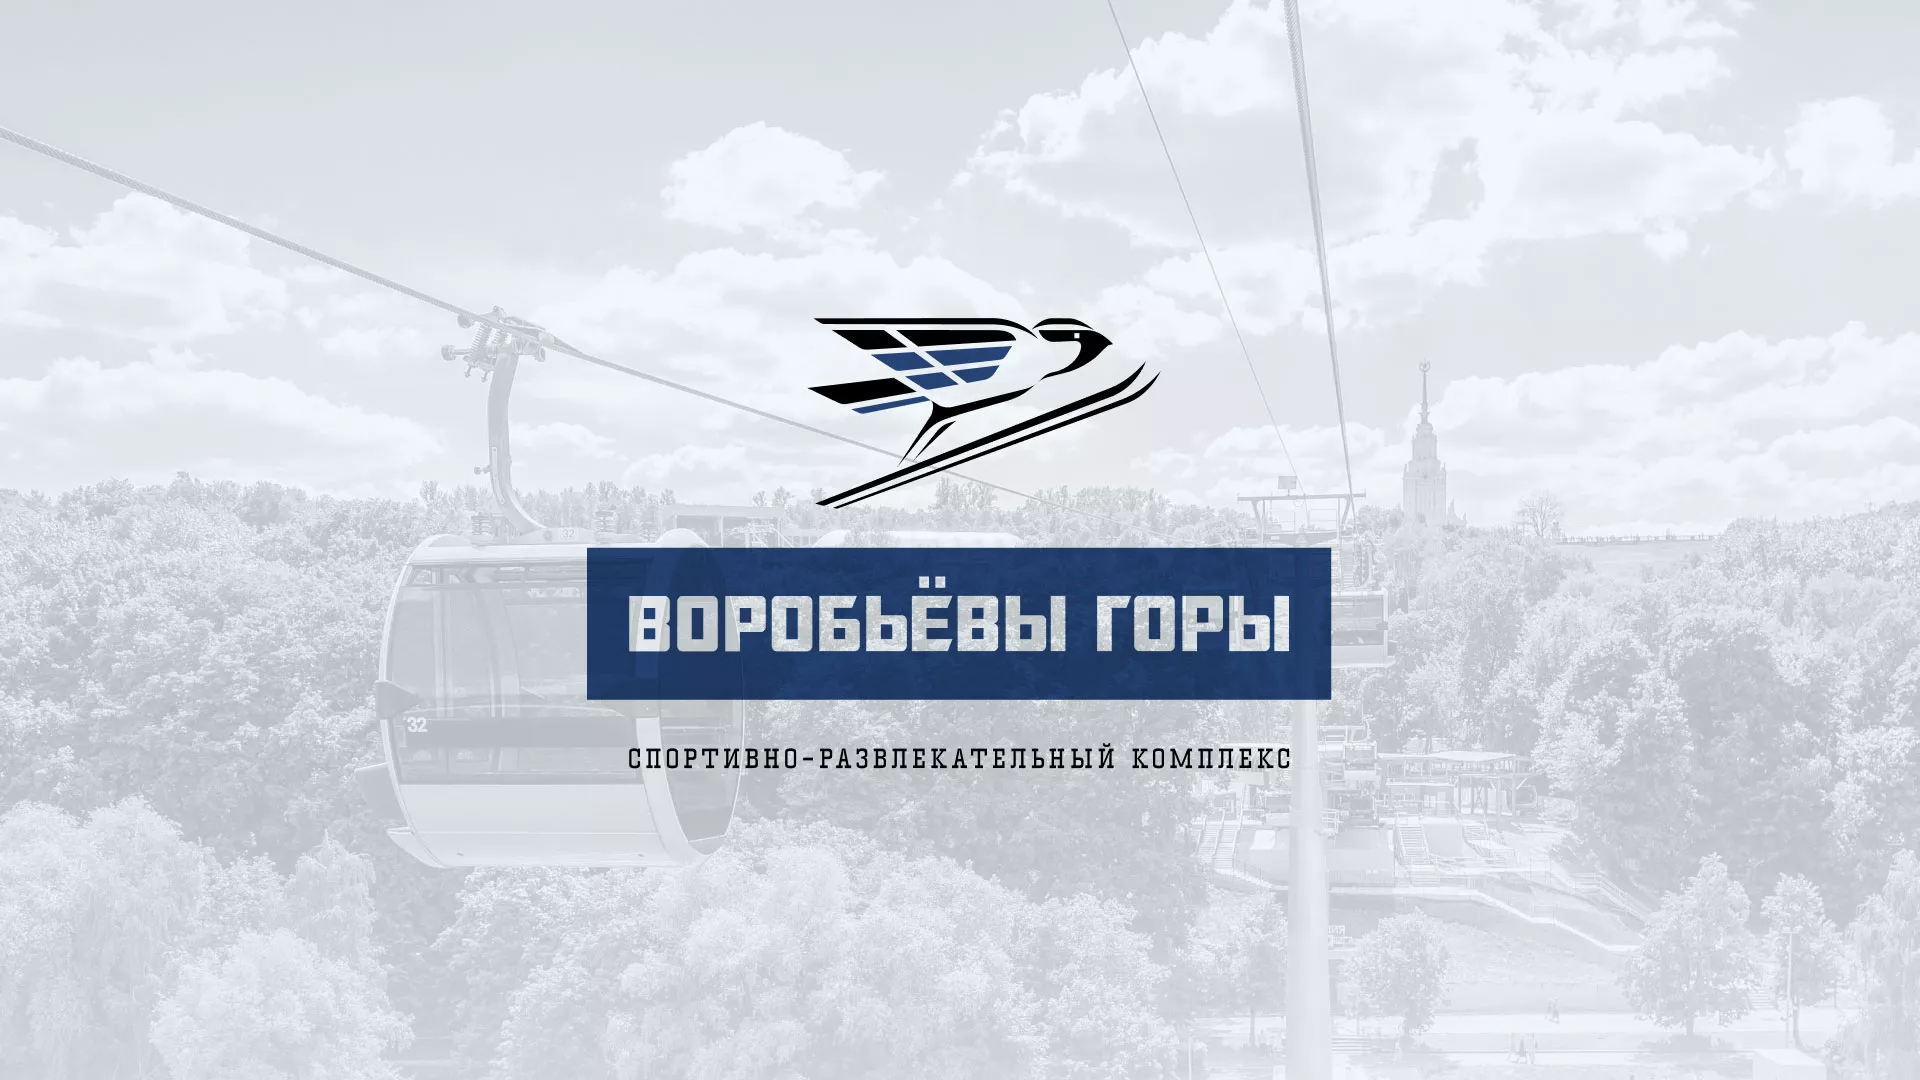 Разработка сайта в Владивостоке для спортивно-развлекательного комплекса «Воробьёвы горы»